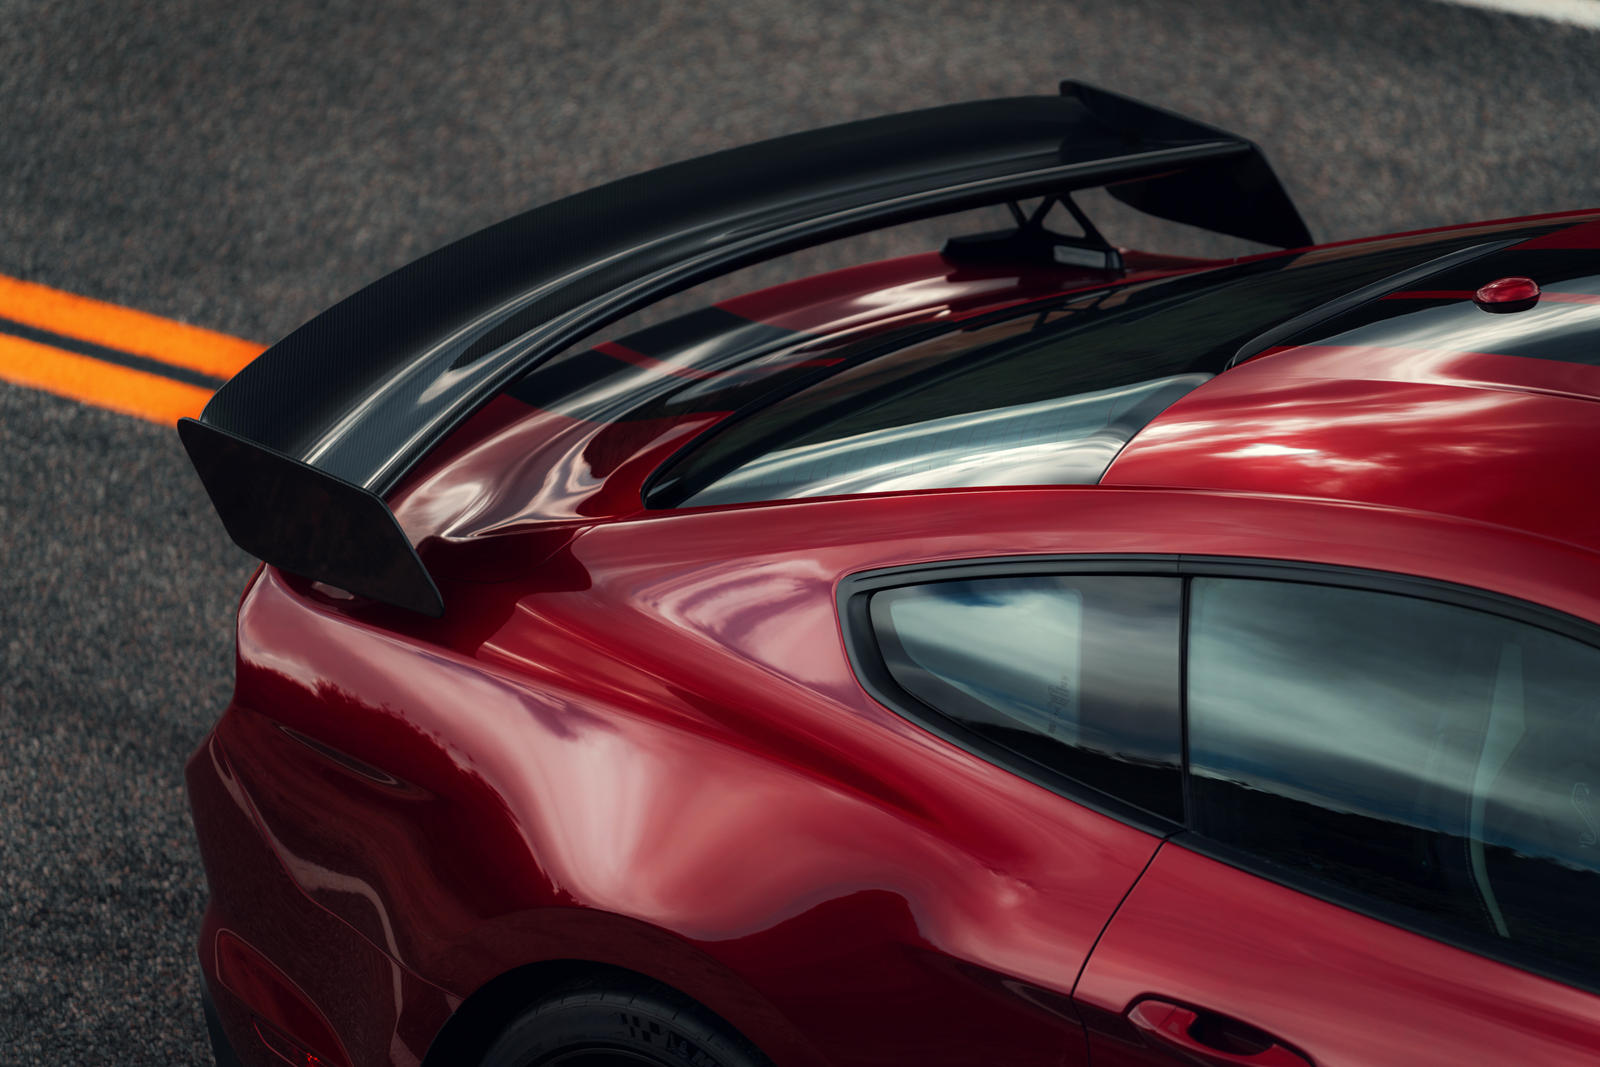 Ford Carbon Fiber Track Package - это вариант стоимостью 18 500 долларов для Shelby GT500, который состоит из некоторых впечатляющих деталей, таких как трековое крыло GT4 из карбона, регулируемые верхние крепления распорок, сиденья с кожаной отделкой